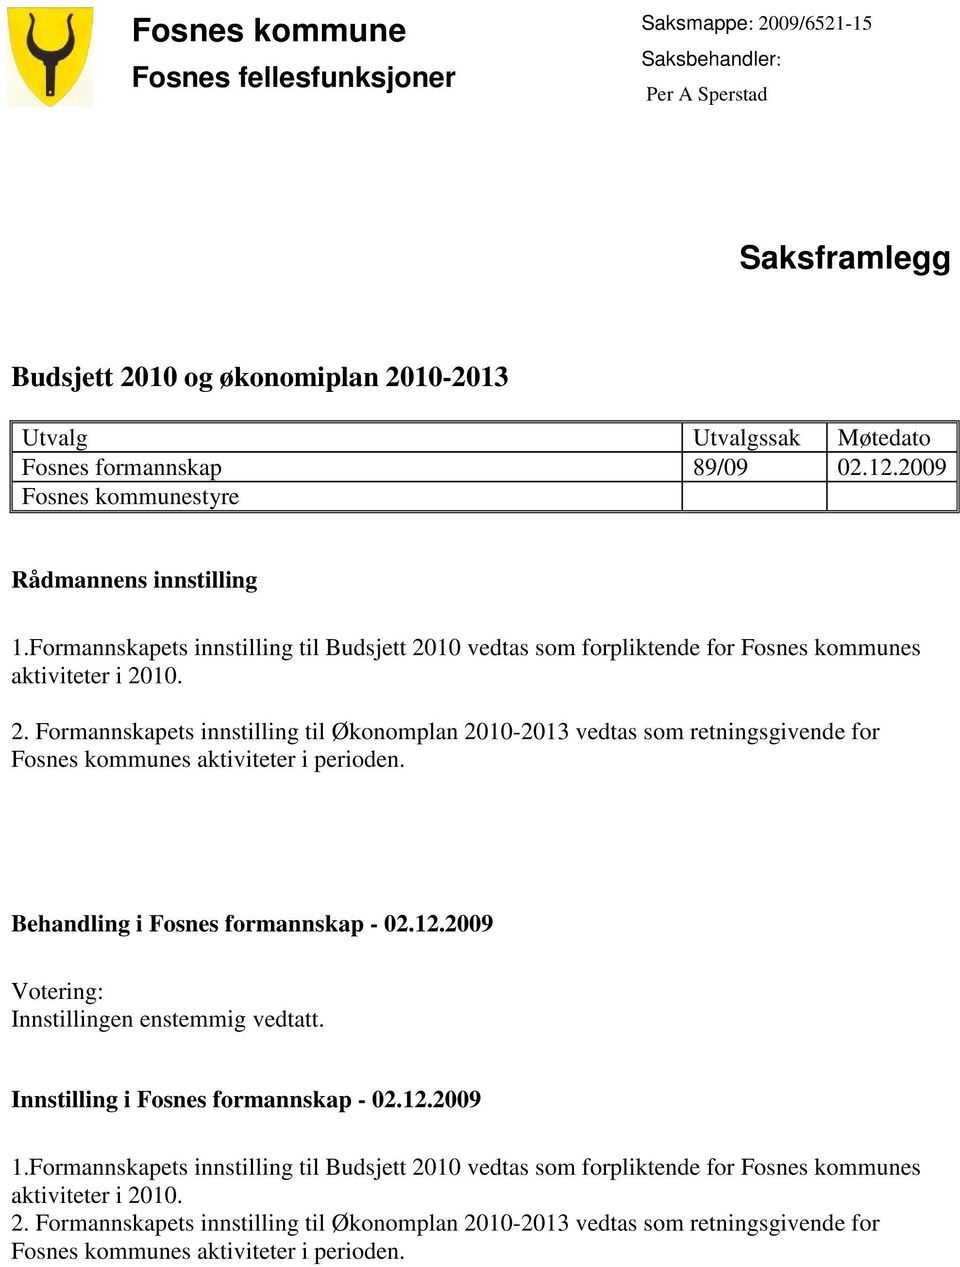 10 vedtas som forpliktende for Fosnes kommunes aktiviteter i 2010. 2. Formannskapets innstilling til Økonomplan 2010-2013 vedtas som retningsgivende for Fosnes kommunes aktiviteter i perioden.